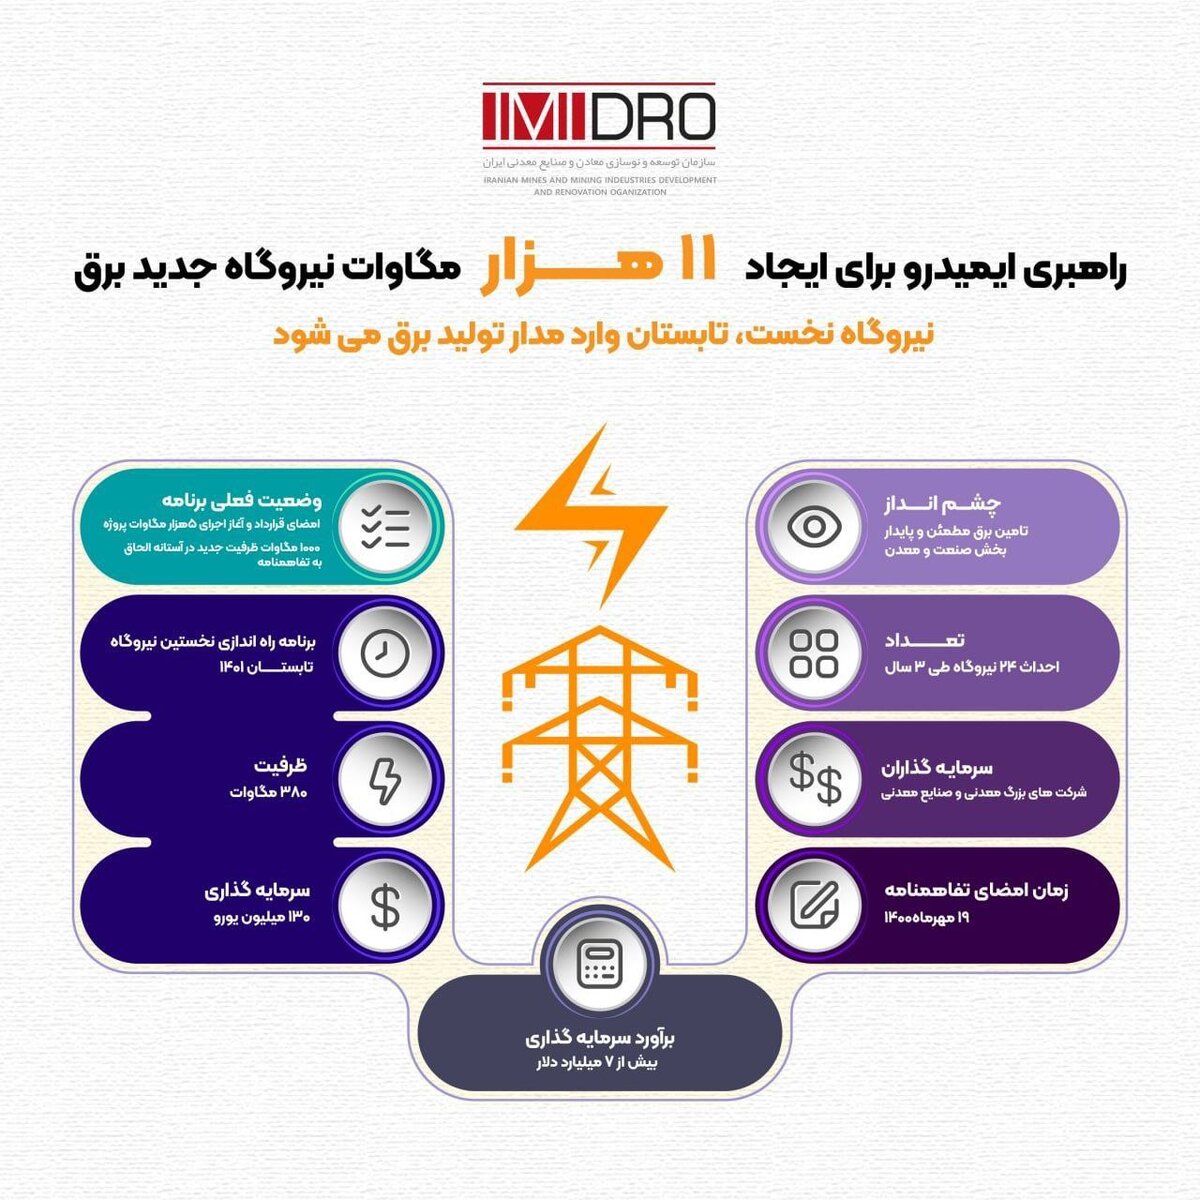  راهبری ایمیدرو برای ایجاد ۱۱هزار مگاوات ظرفیت تولید برق